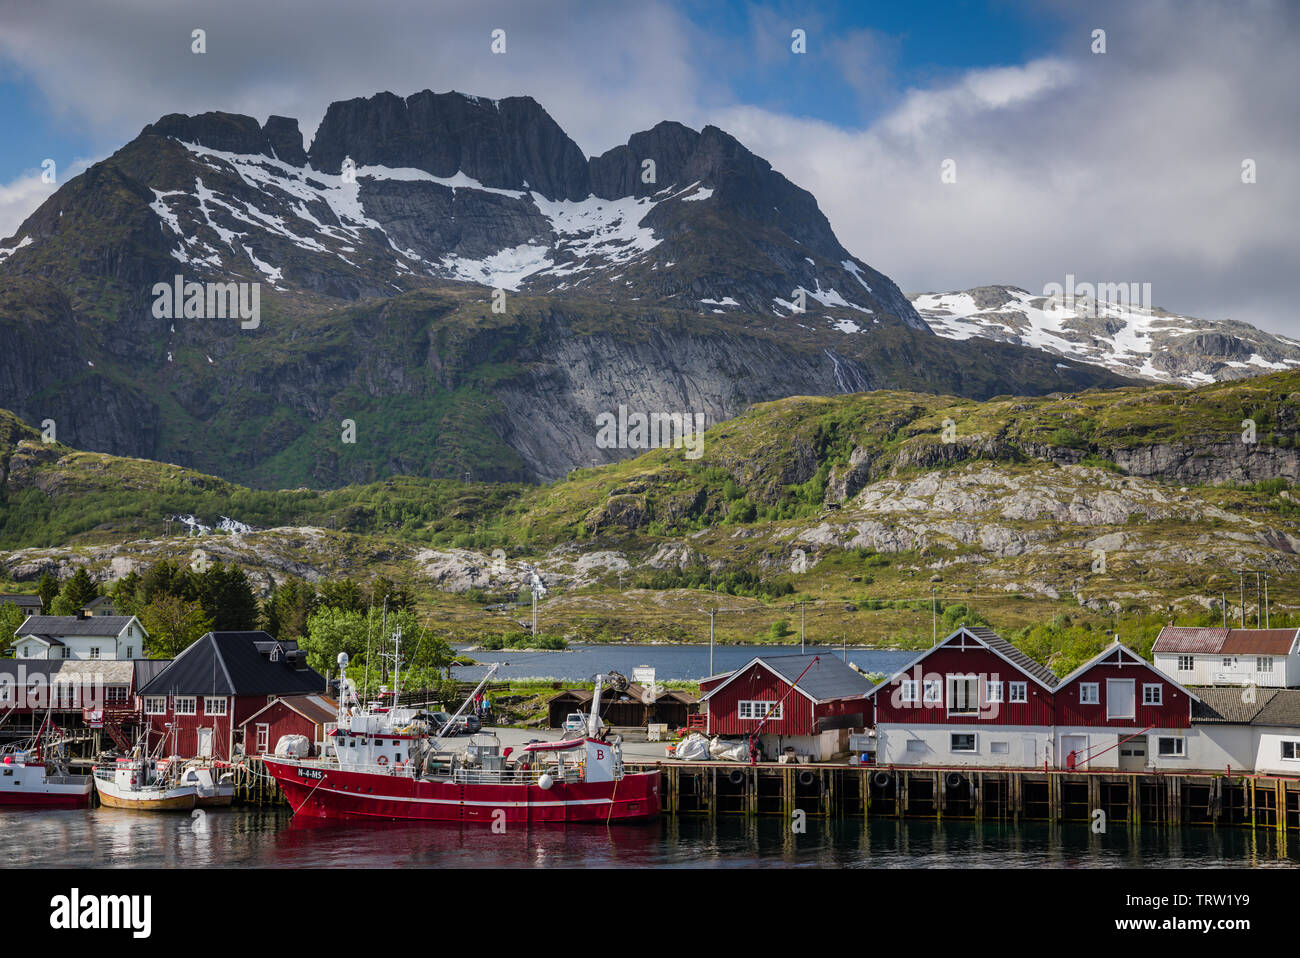 Village de pêcheurs, Svertelvika, près de Moskenes, îles Lofoten, Norvège Banque D'Images